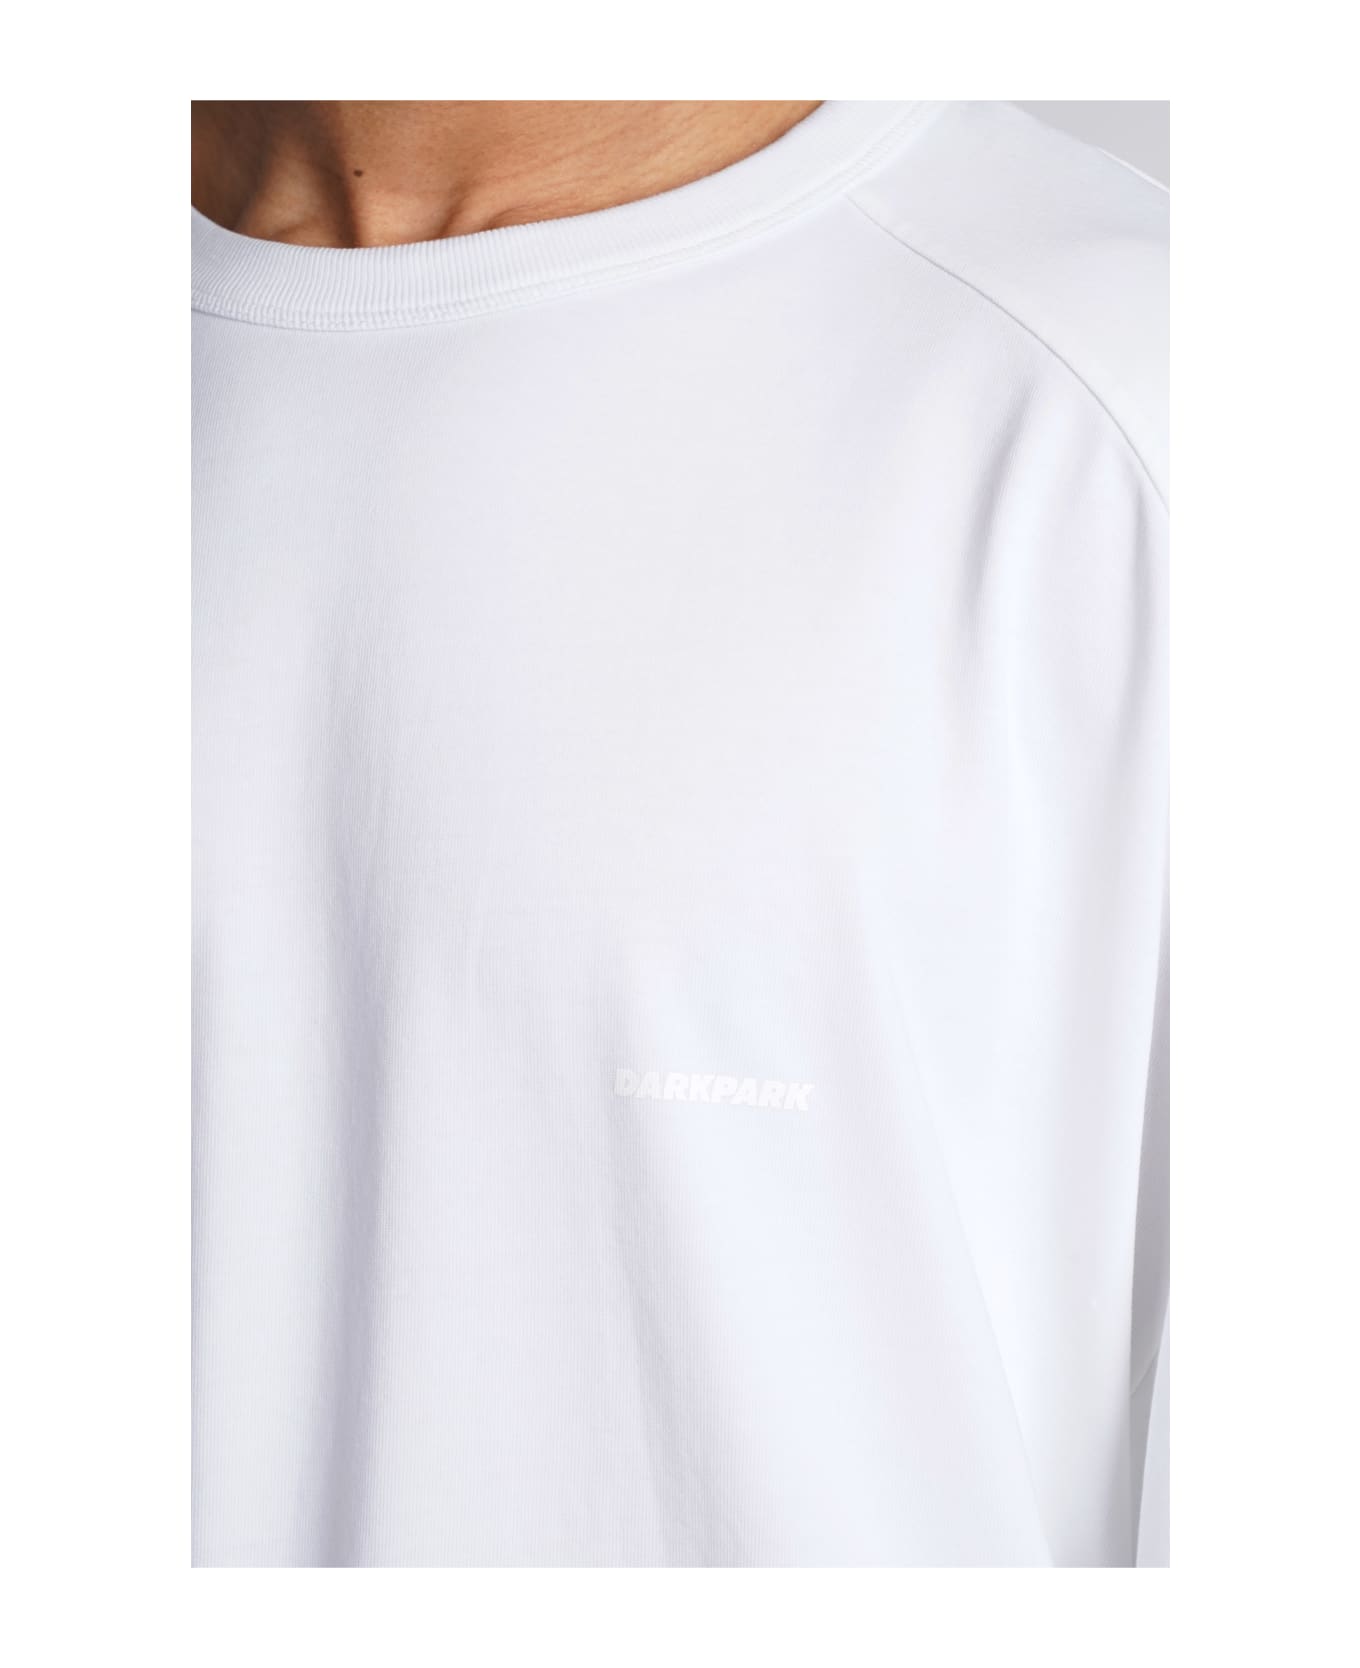 DARKPARK Theo T-shirt In White Cotton - white